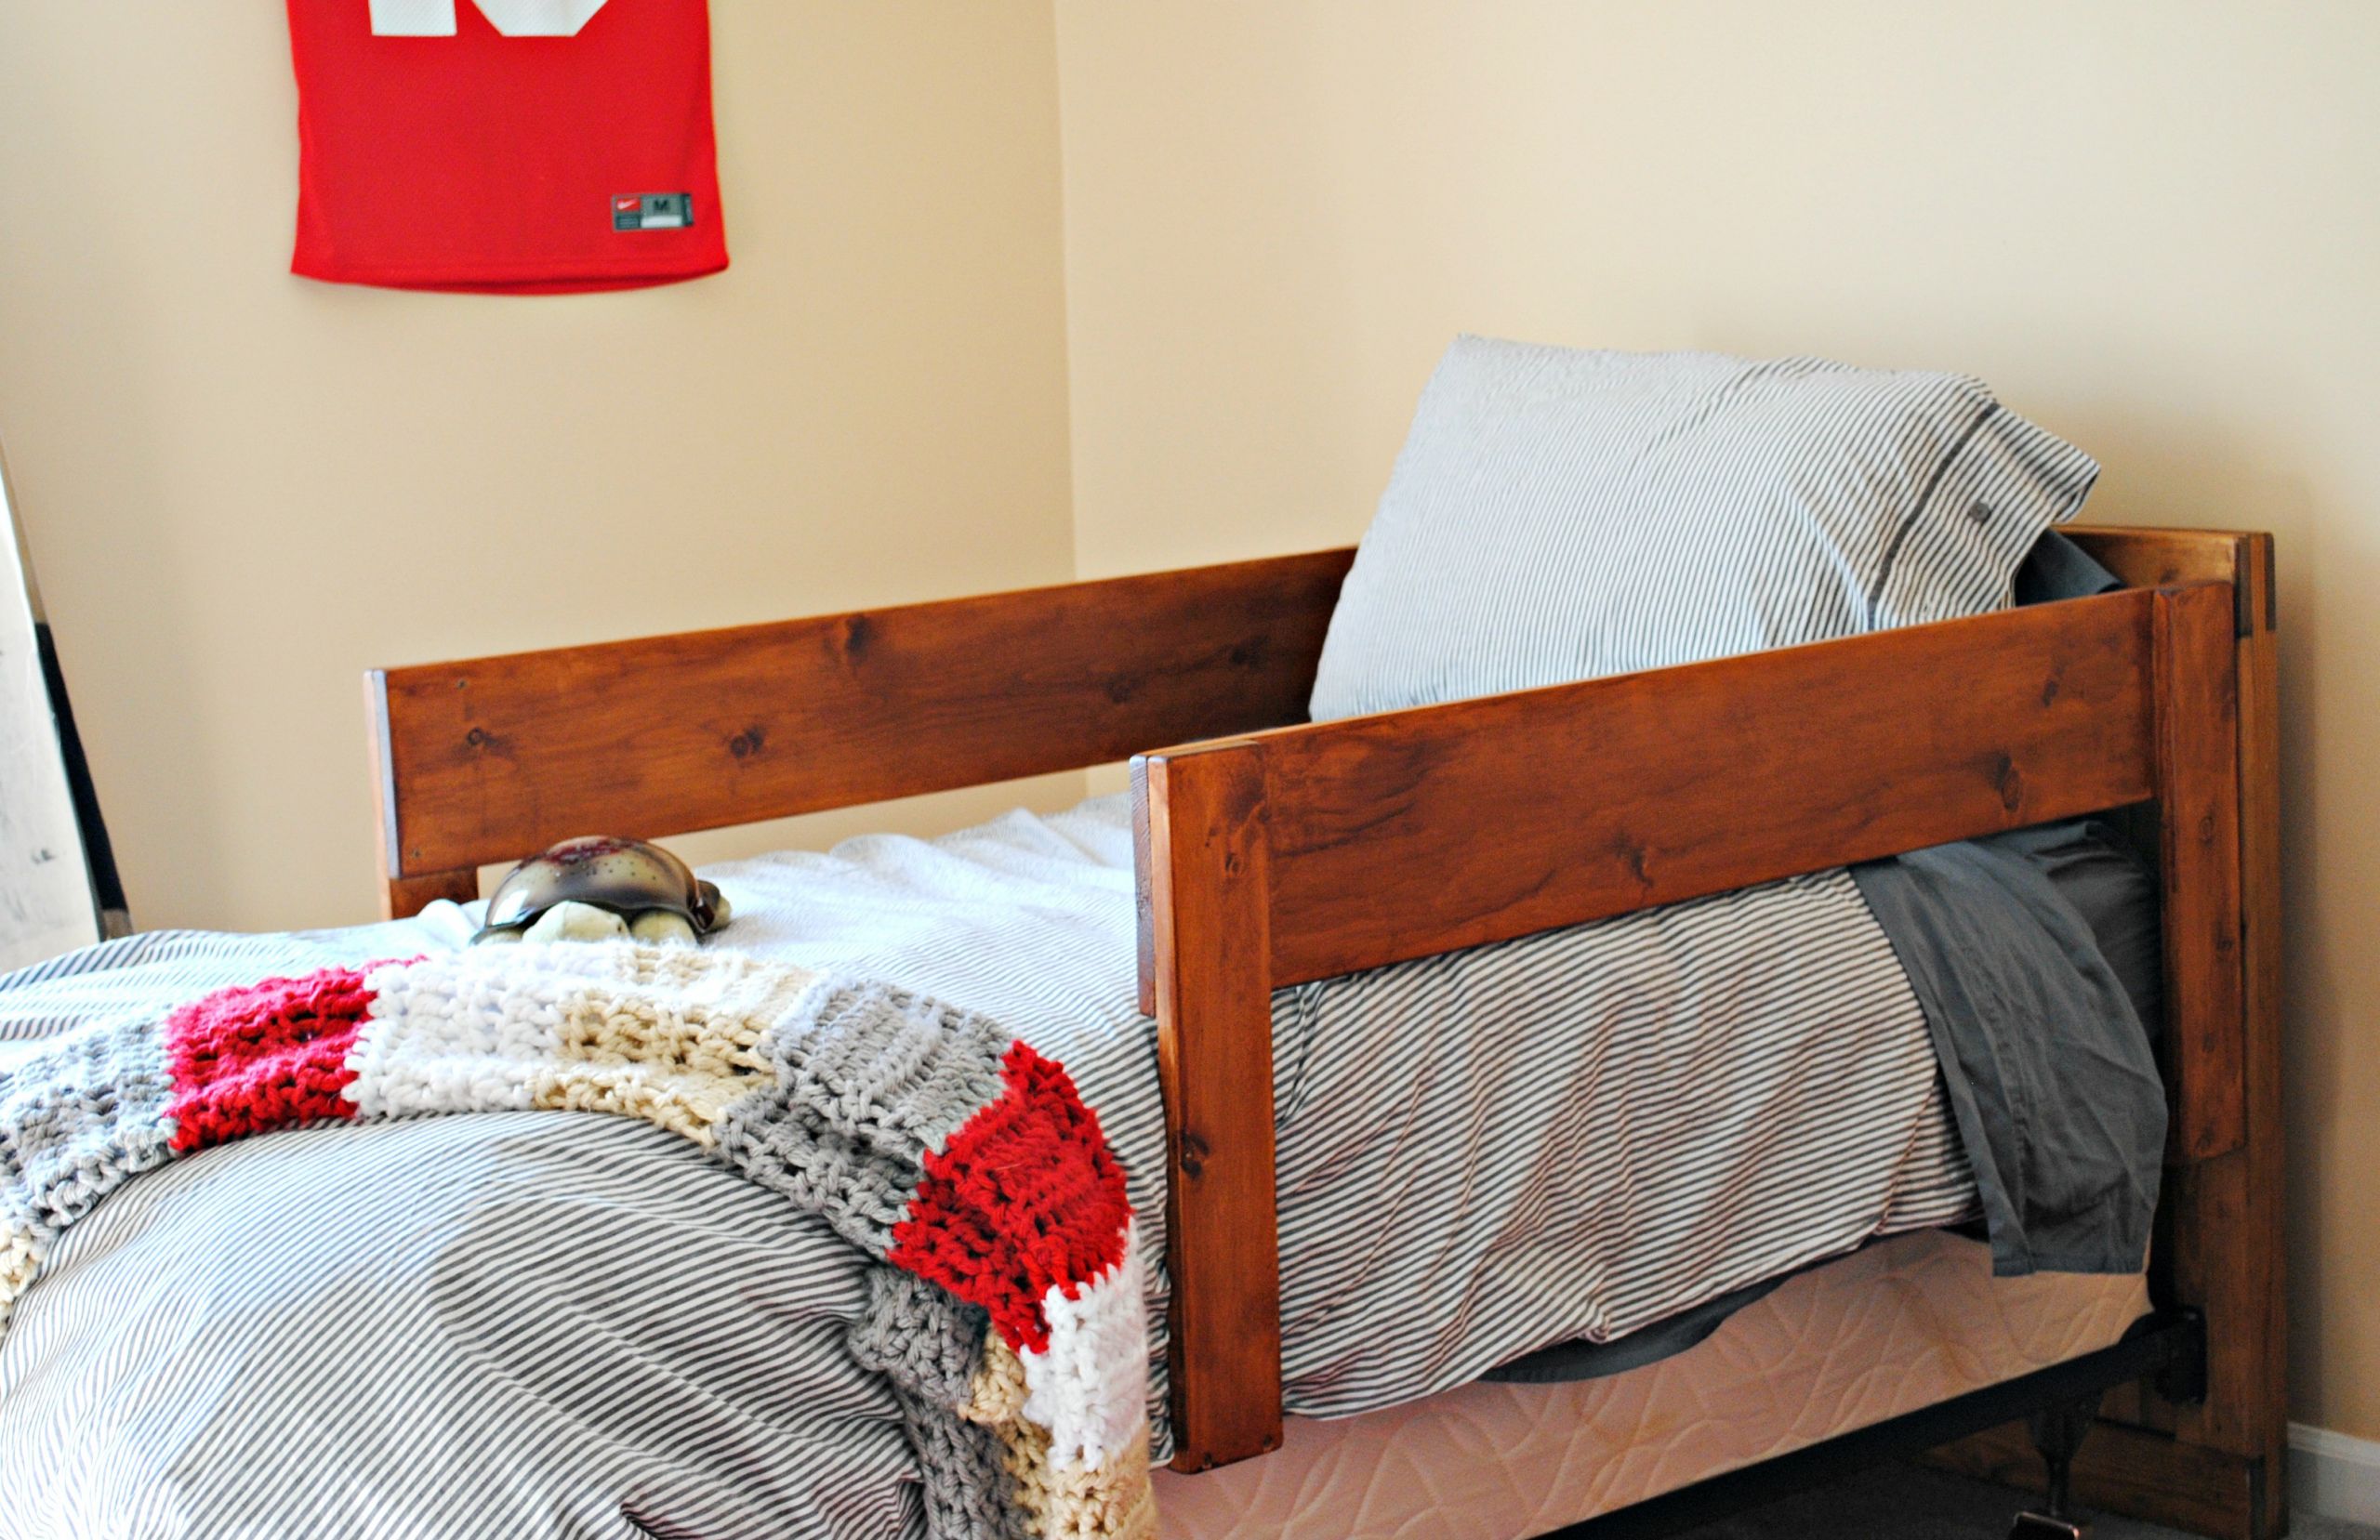 DIY Bed Rails For Toddler
 DIY Toddler Bed Rails Place in Progress